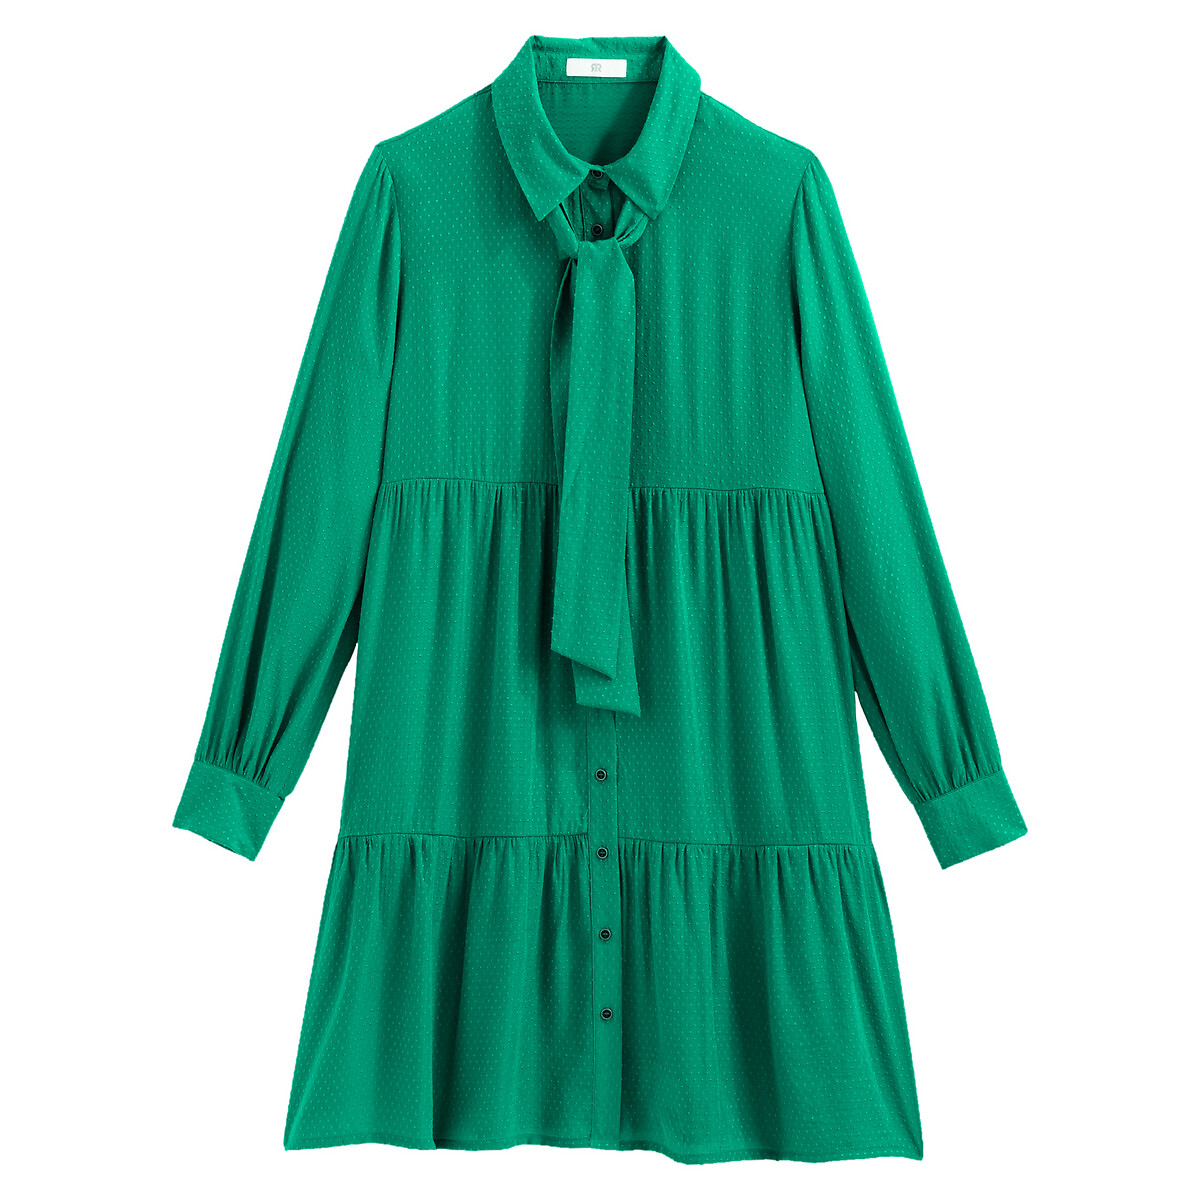 Платье LaRedoute Расклешенное короткое с длинными рукавами 46 (FR) - 52 (RUS) зеленый, размер 46 (FR) - 52 (RUS) Расклешенное короткое с длинными рукавами 46 (FR) - 52 (RUS) зеленый - фото 5